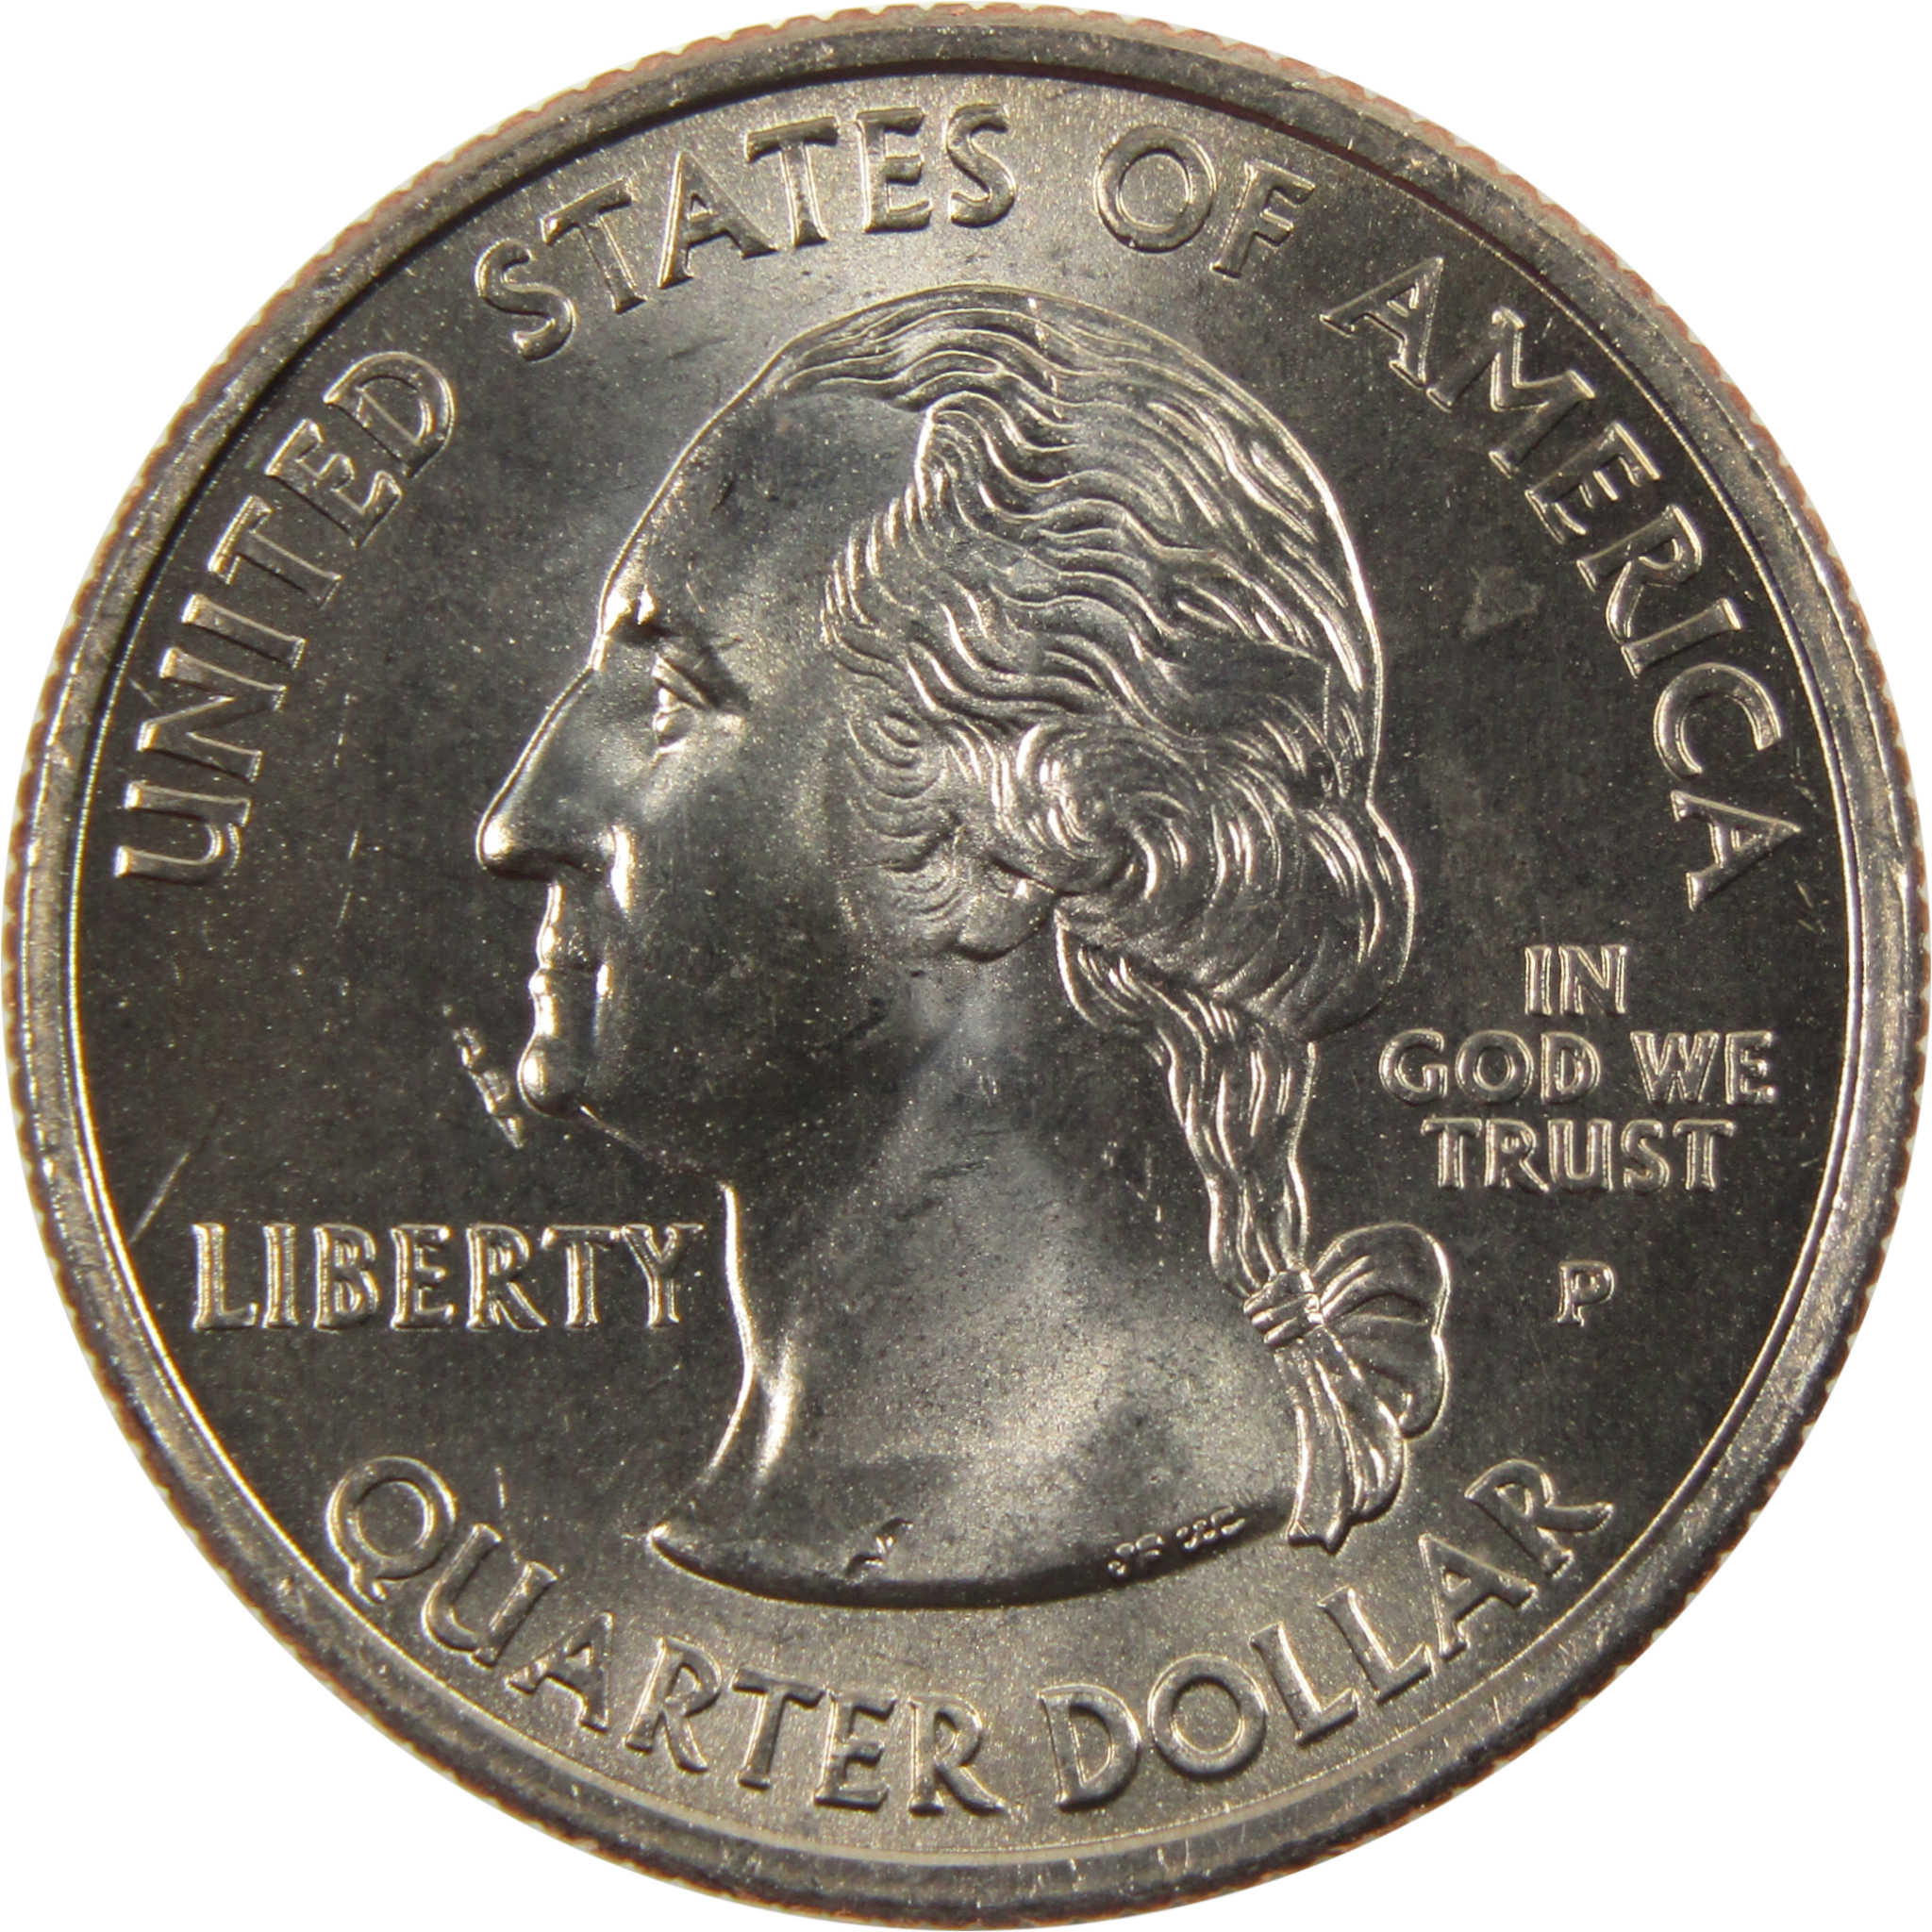 2005 P California State Quarter BU Uncirculated Clad 25c Coin